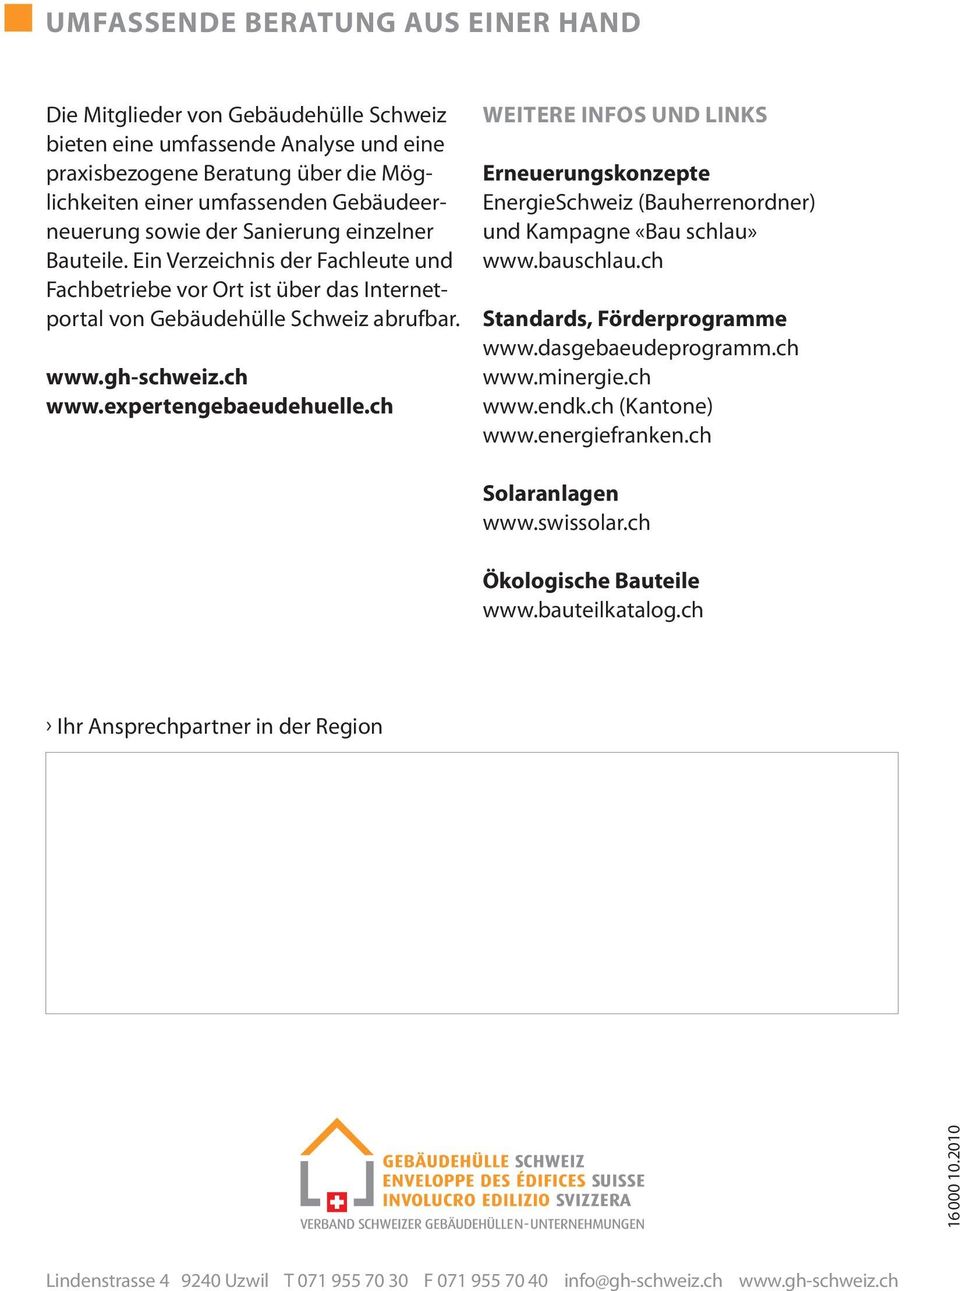 expertengebaeudehuelle.ch Weitere Infos und Links Erneuerungskonzepte EnergieSchweiz (Bauherrenordner) und Kampagne «Bau schlau» www.bauschlau.ch Standards, Förderprogramme www.dasgebaeudeprogramm.